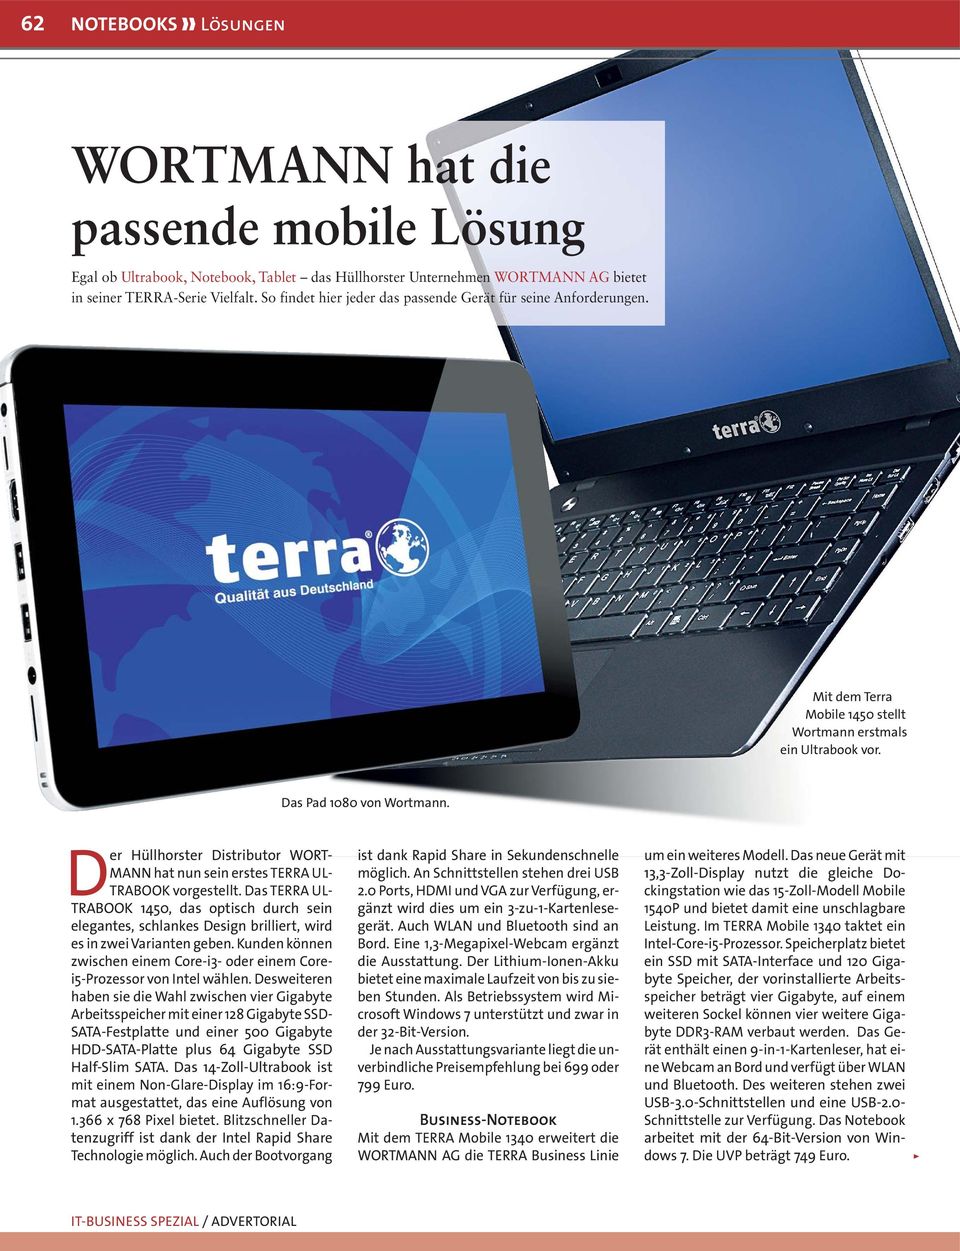 Der Hüllhorster Distributor WORT- MANN hat nun sein erstes TERRA UL- TRABOOK vorgestellt.